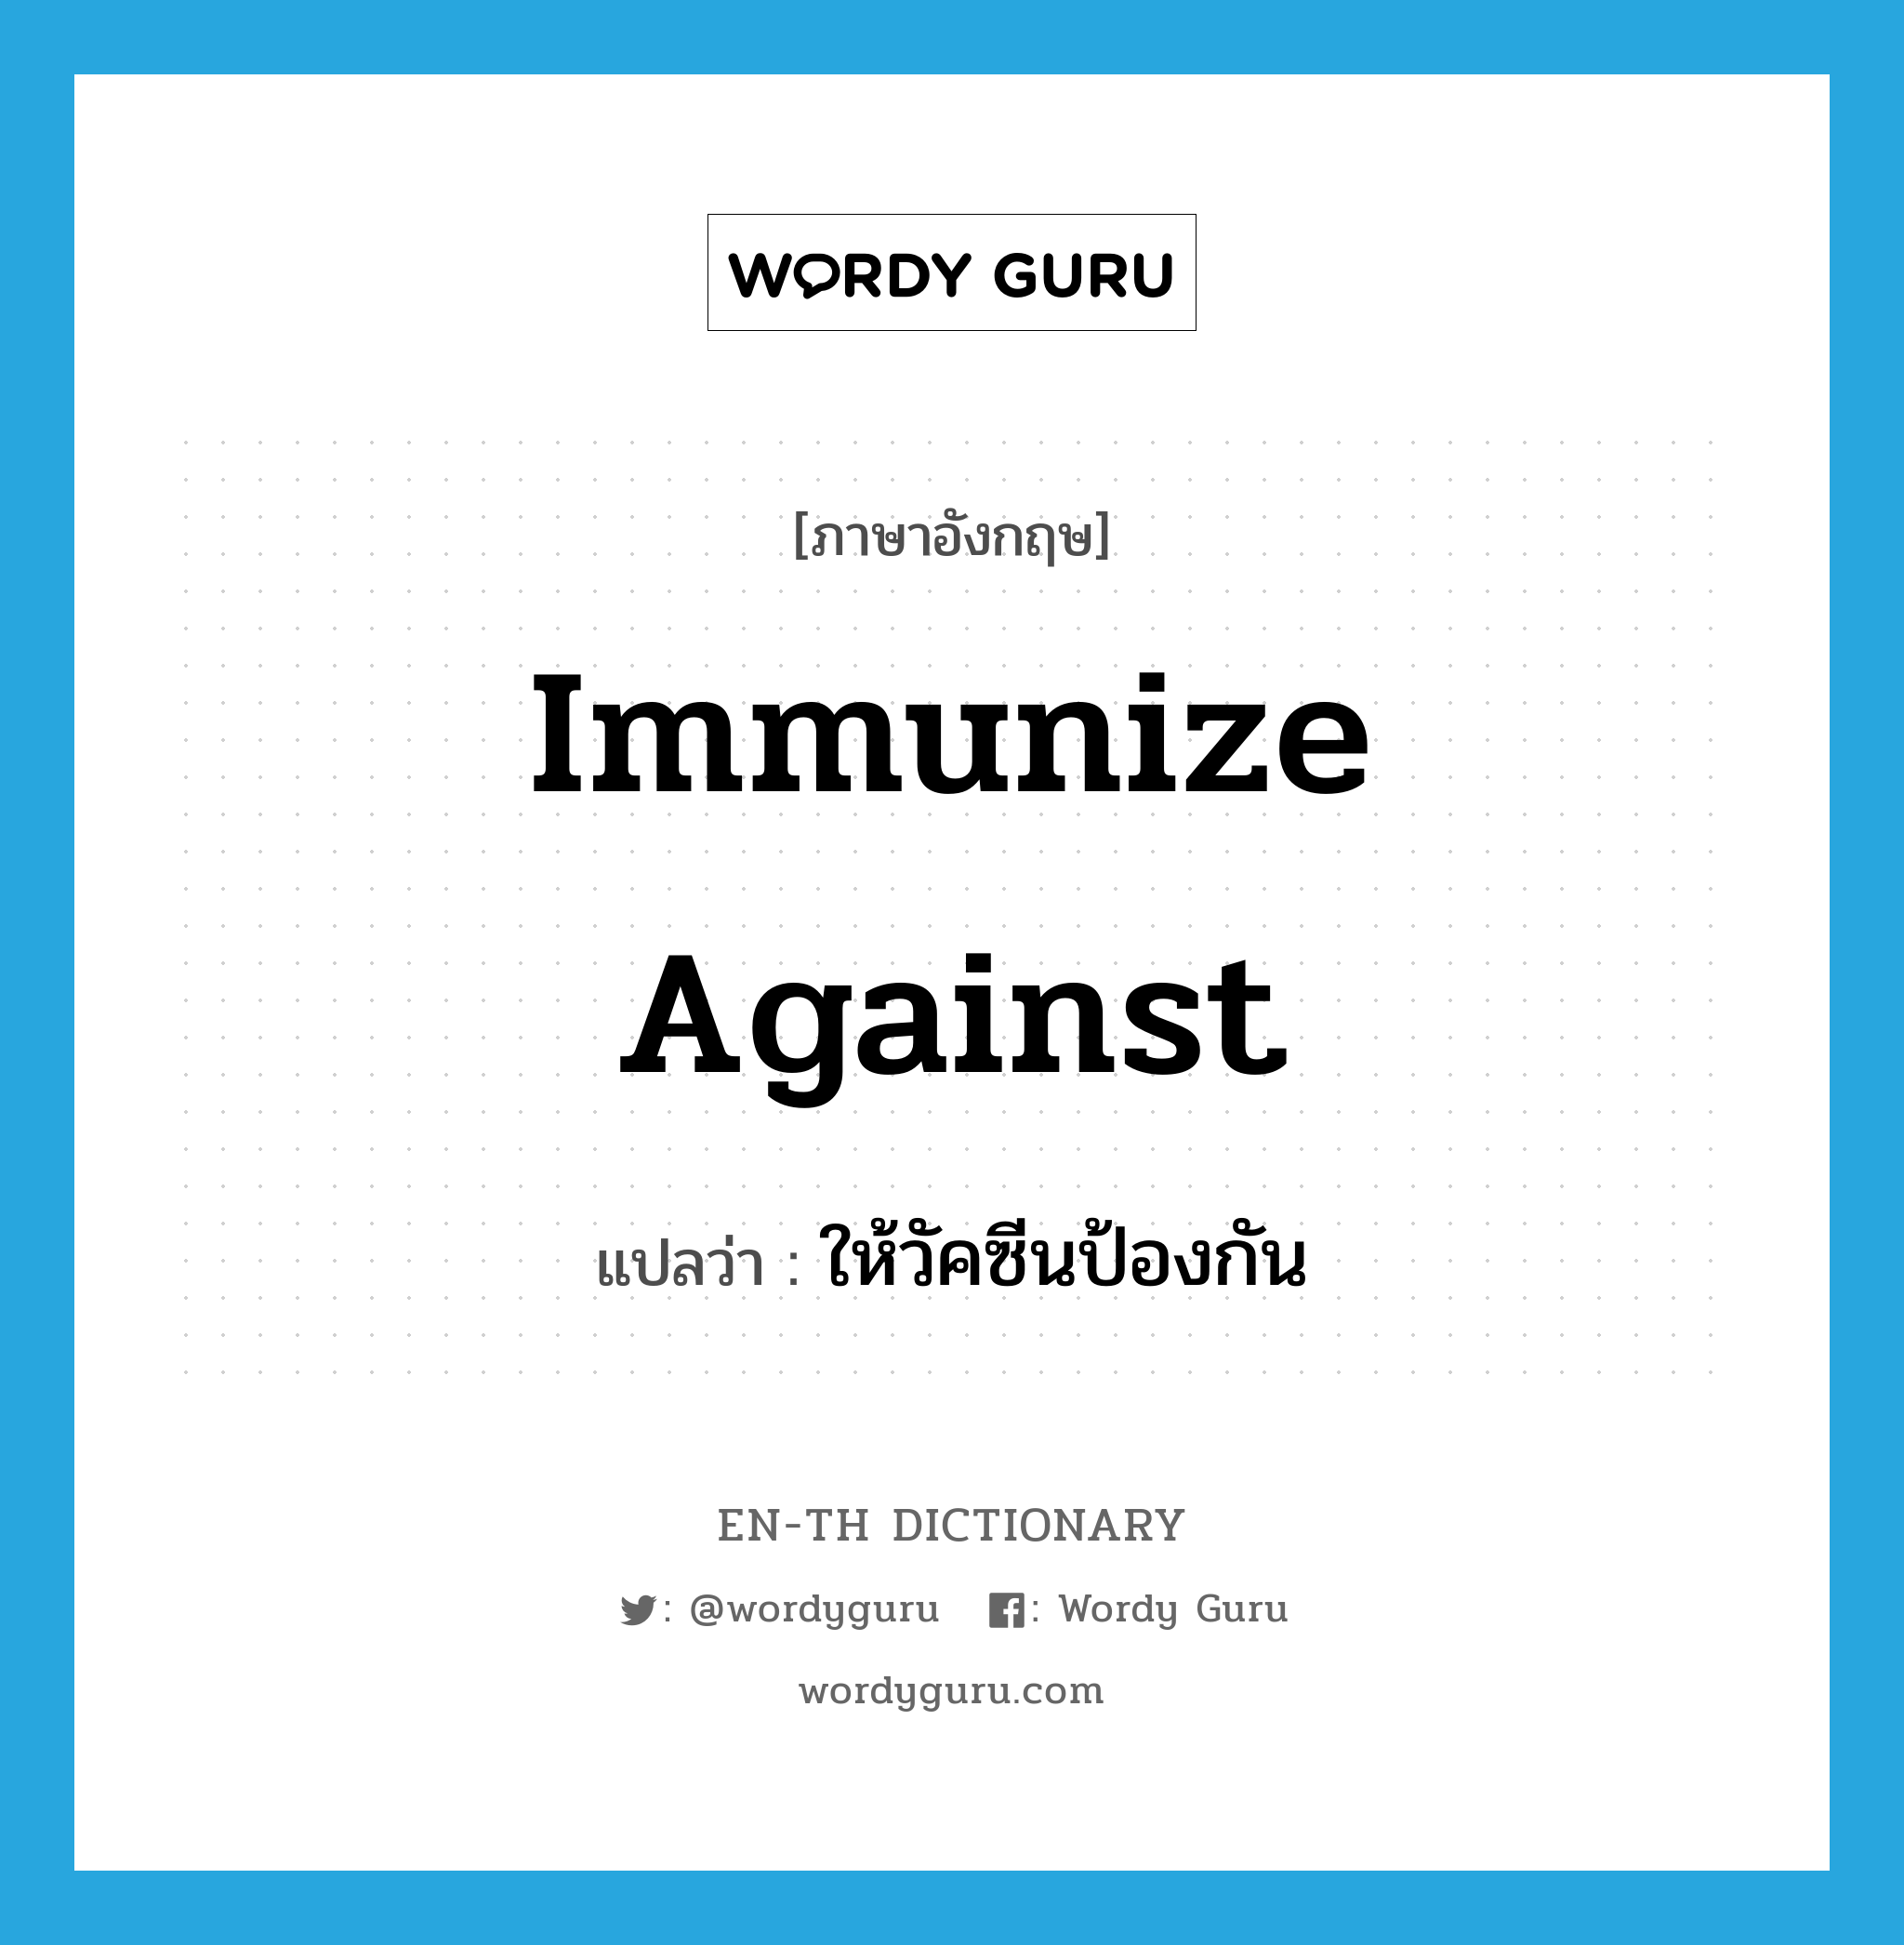 ให้วัคซีนป้องกัน ภาษาอังกฤษ?, คำศัพท์ภาษาอังกฤษ ให้วัคซีนป้องกัน แปลว่า immunize against ประเภท PHRV หมวด PHRV